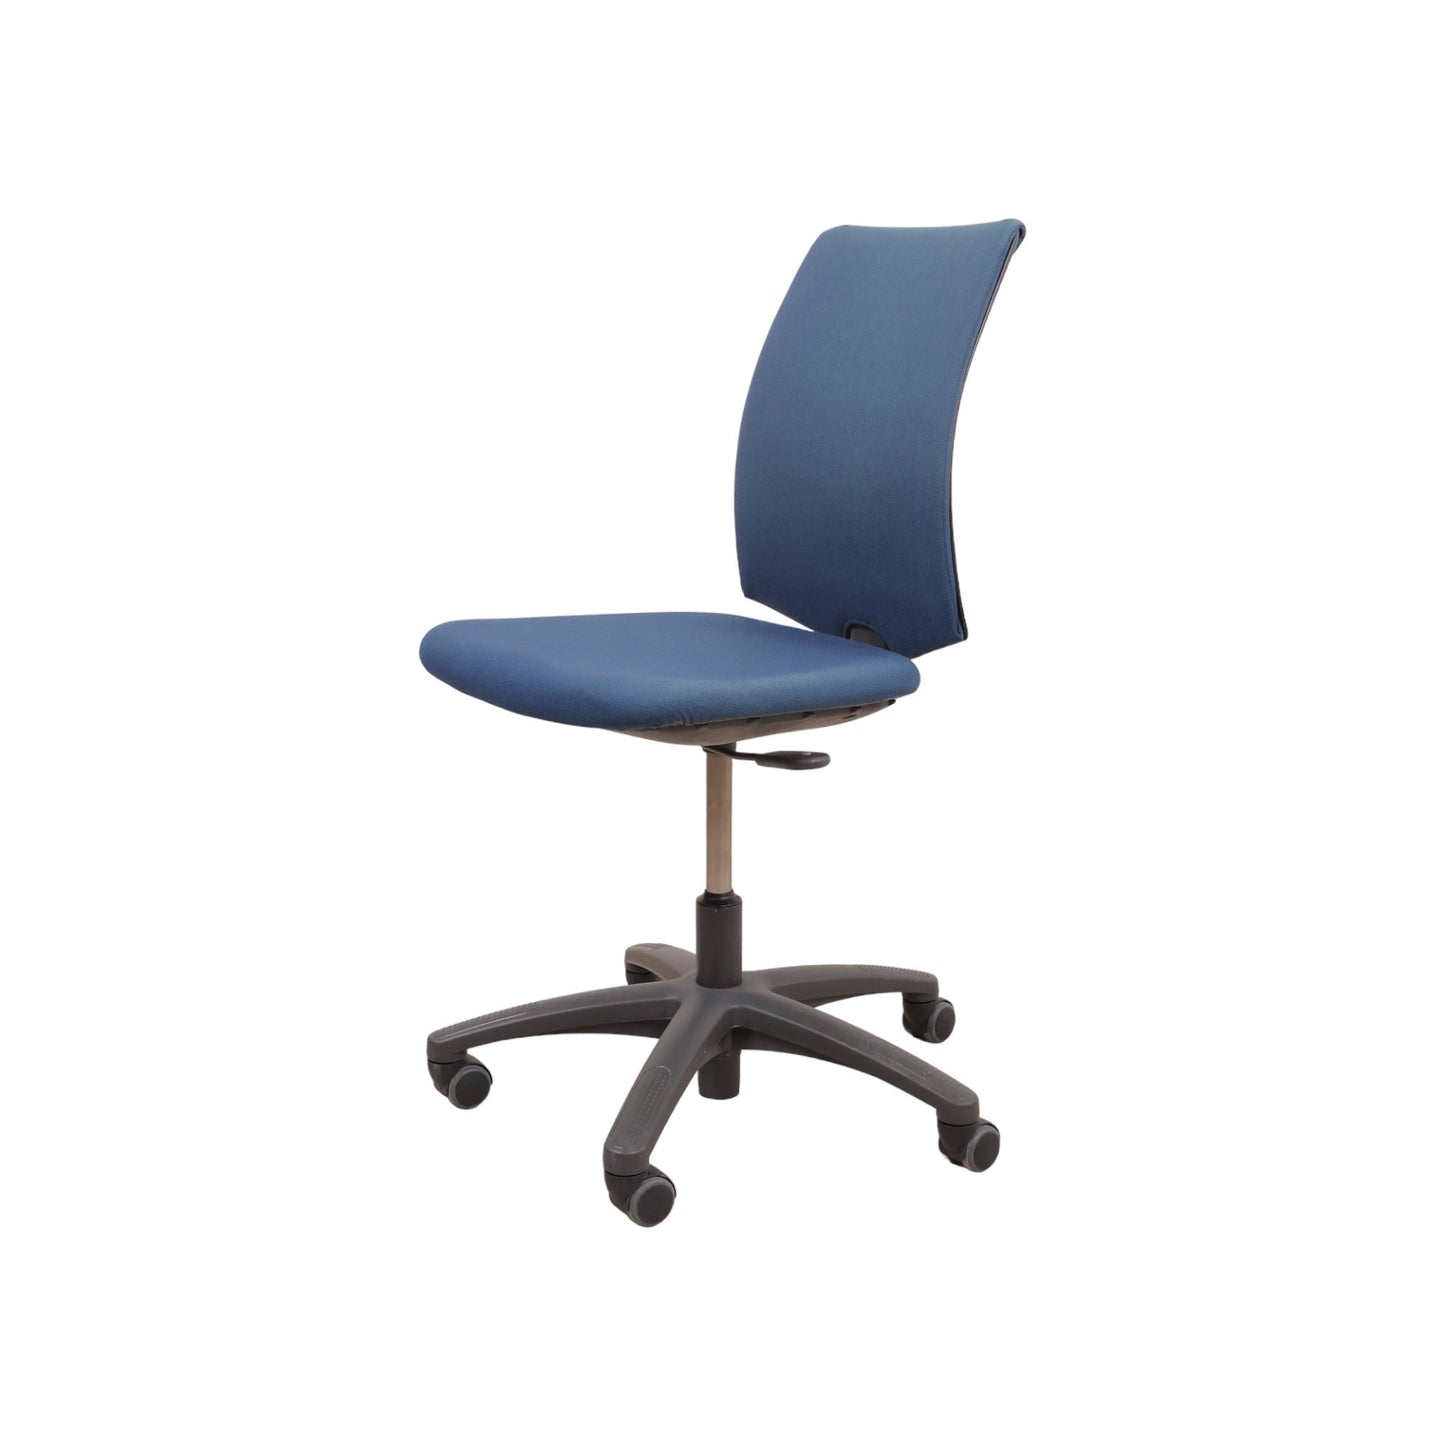 Nyrenset | Blå Håg H05 (Visit F) kontorstoler